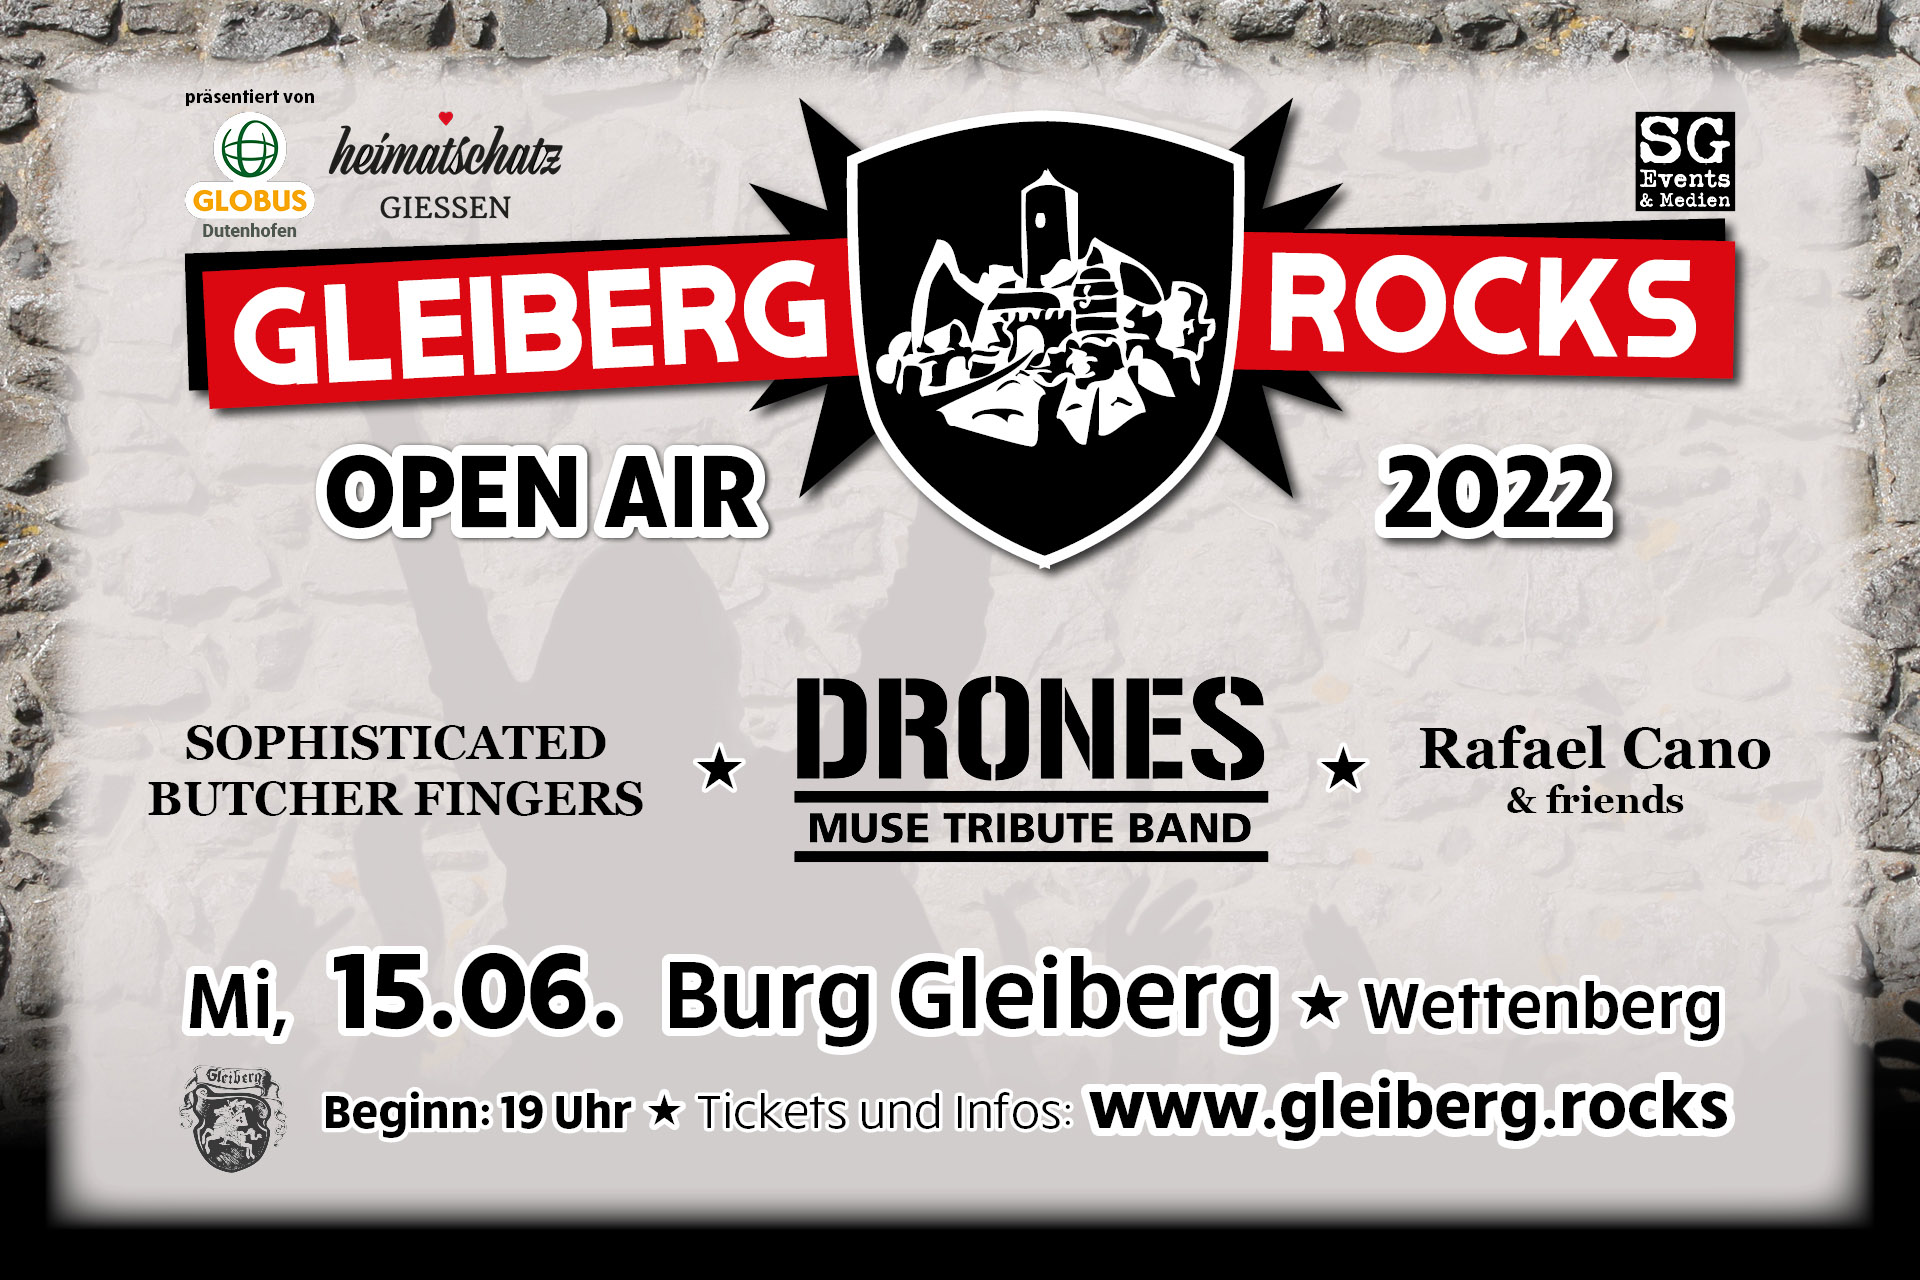 Gleiberg rocks 2022